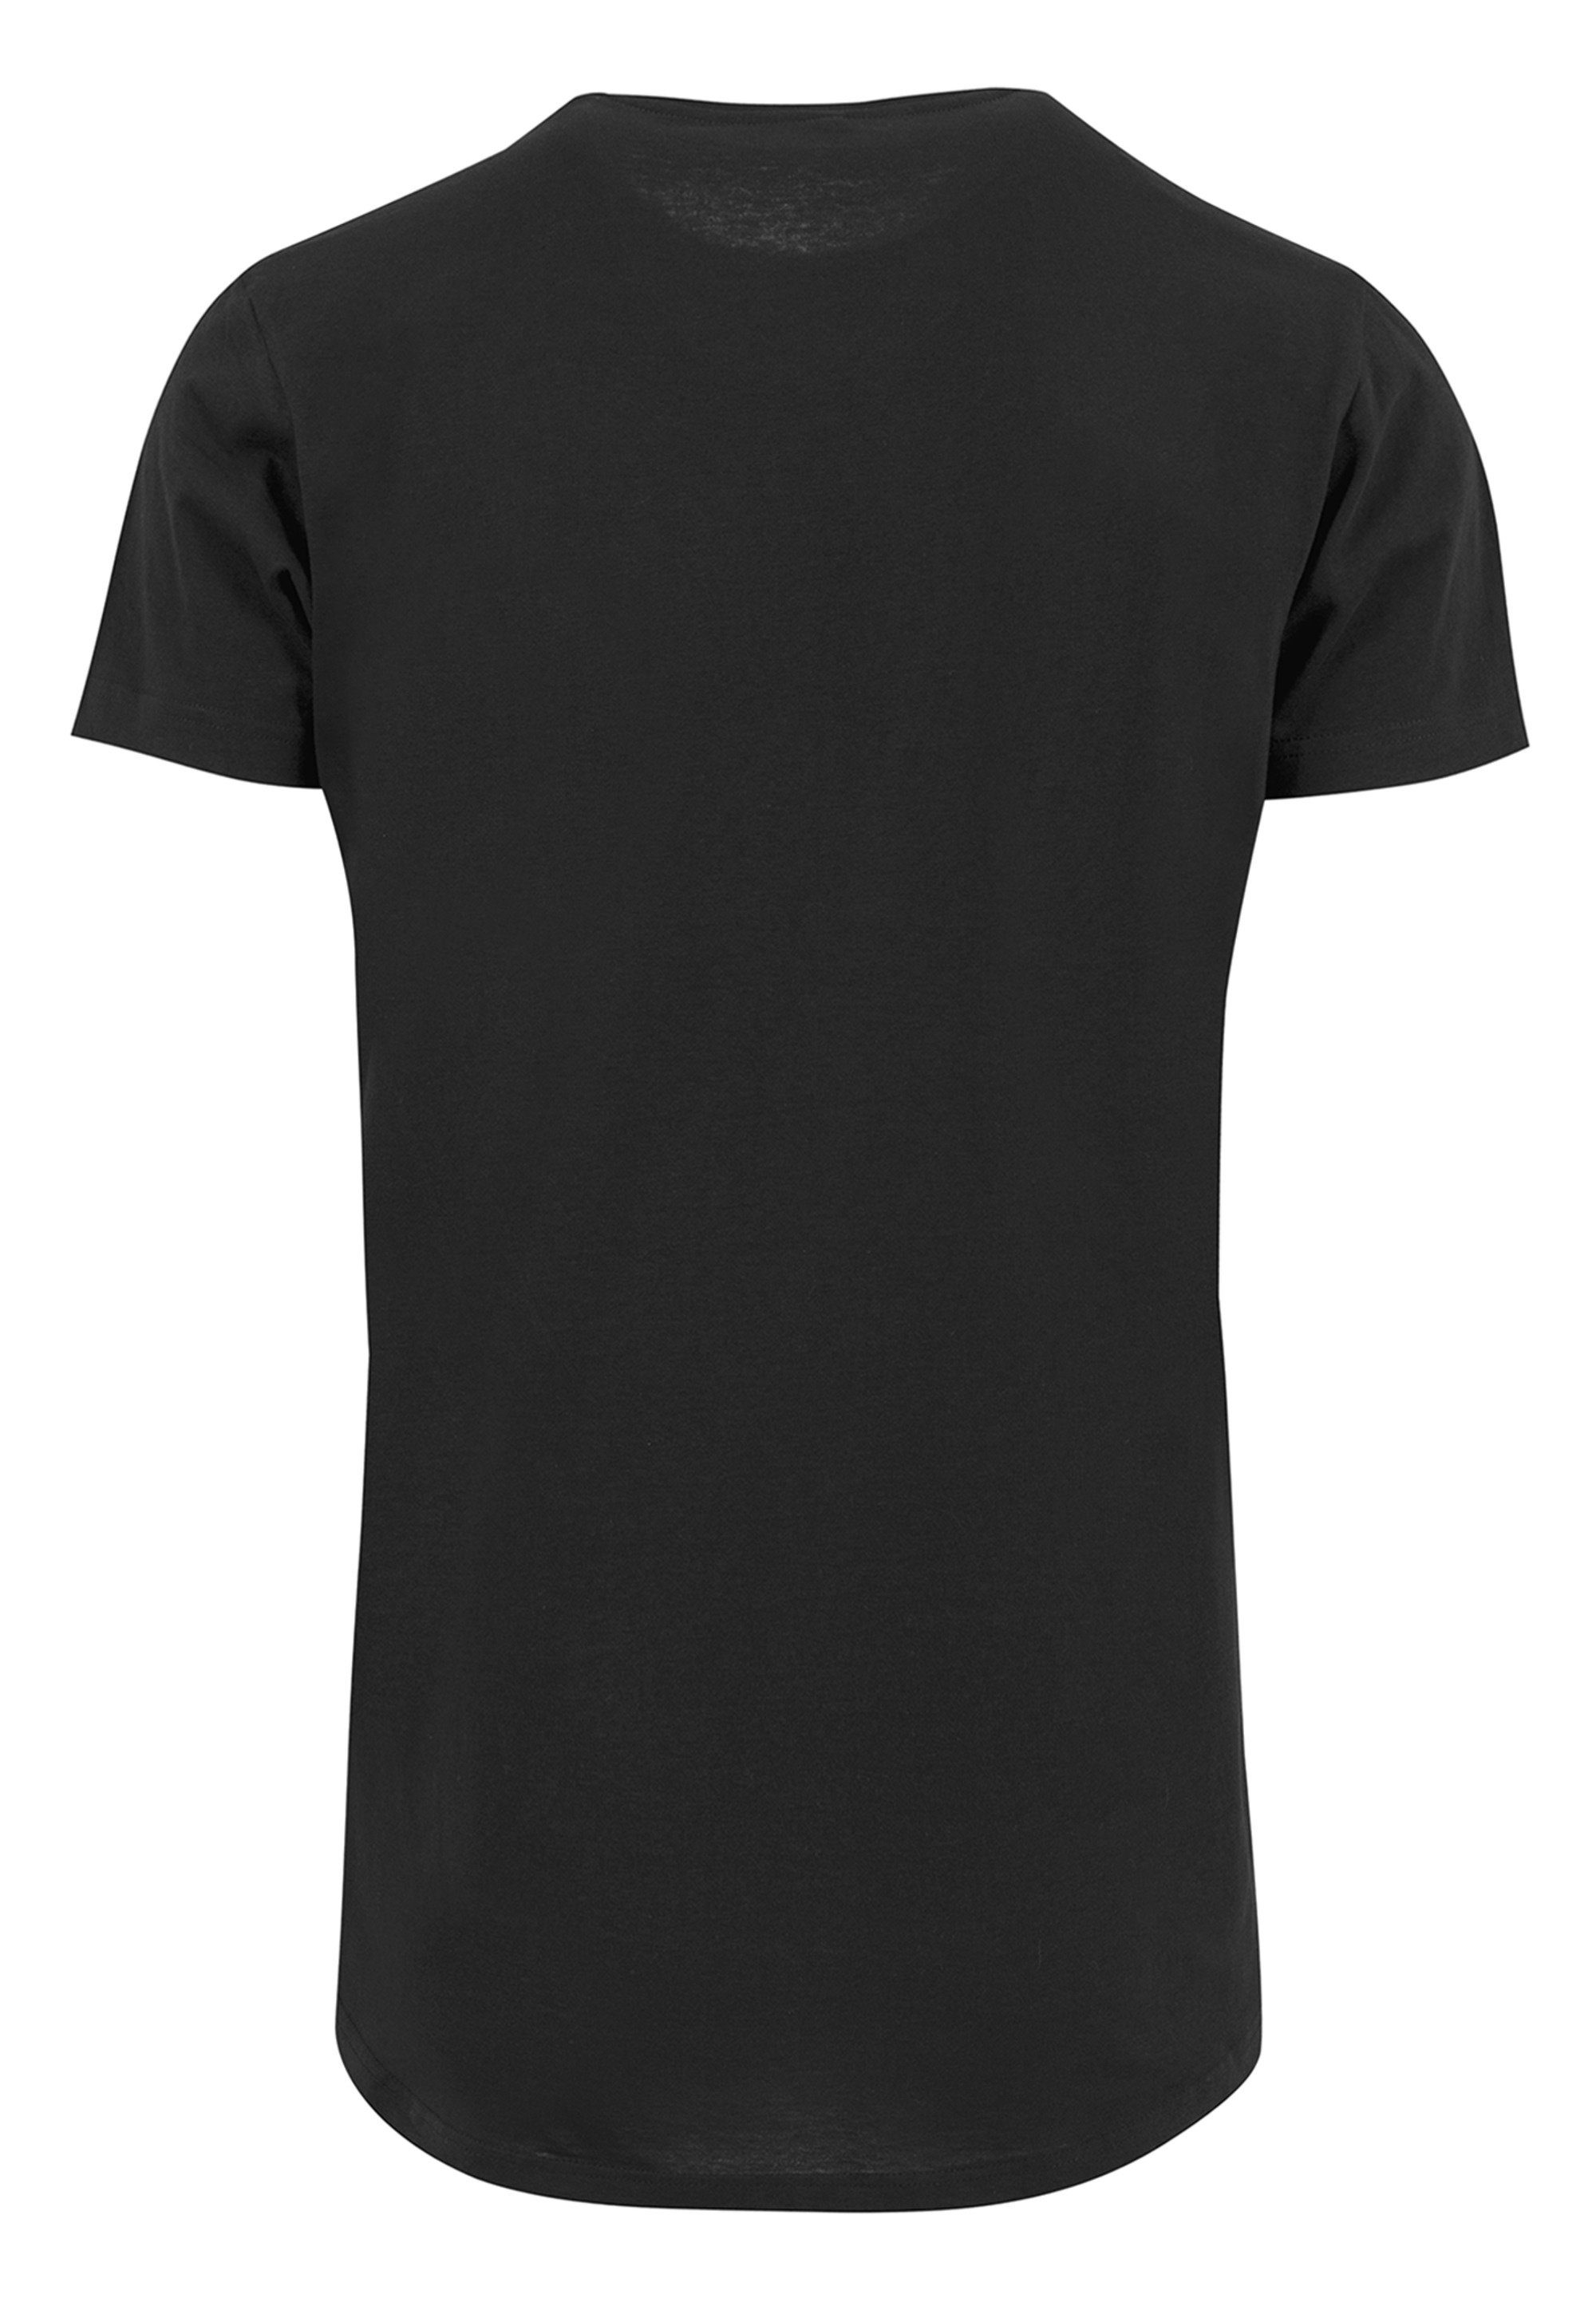 T-Shirt SIZE Queen Crest PLUS F4NT4STIC schwarz Classic Print